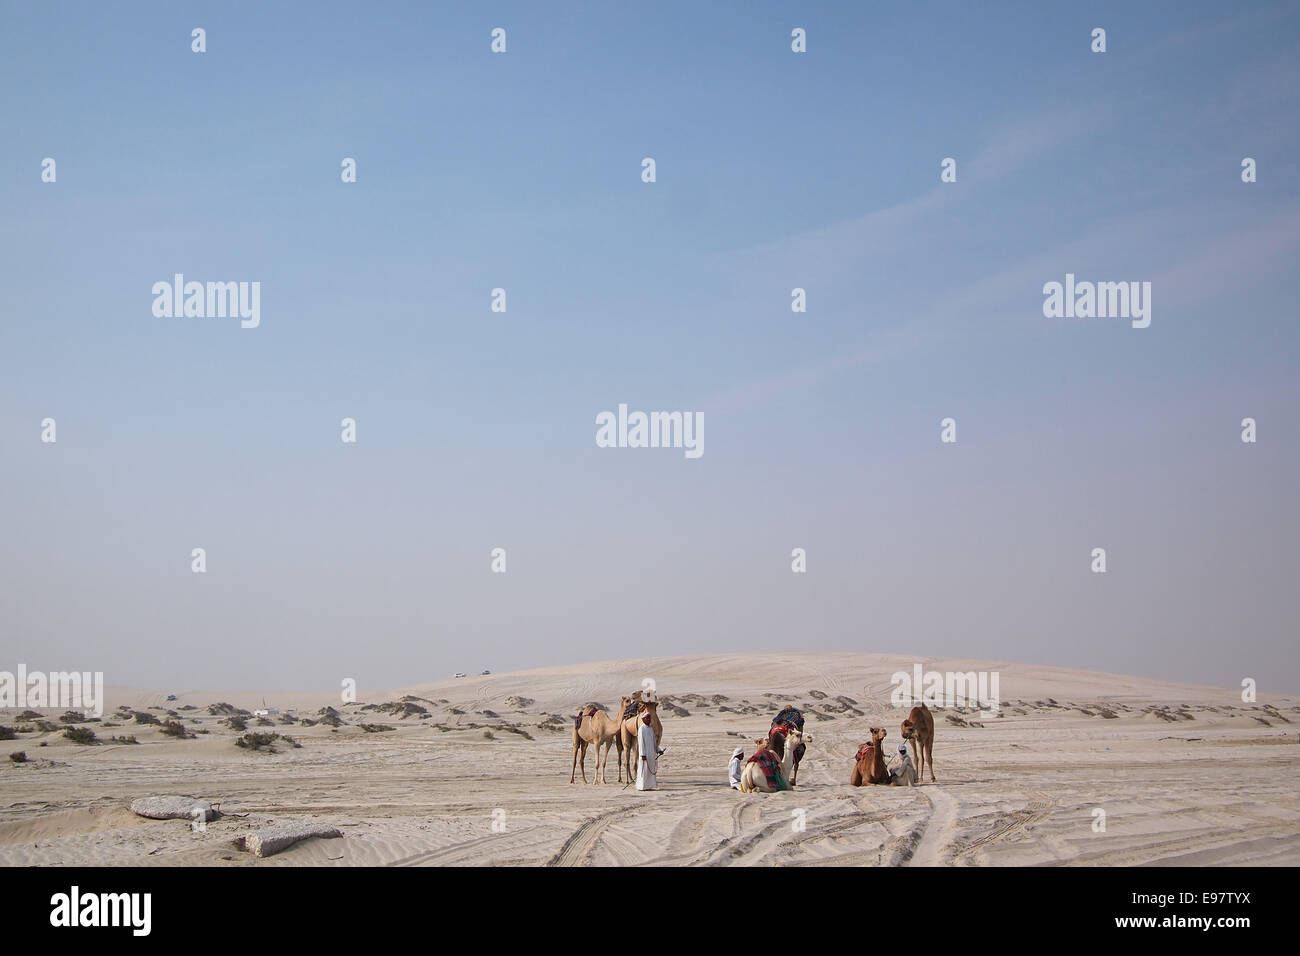 Eine Gruppe Beduinen mit Dromedaren im Sand der arabischen Wüste in den Persischen Golf Staat Katar. Stockfoto